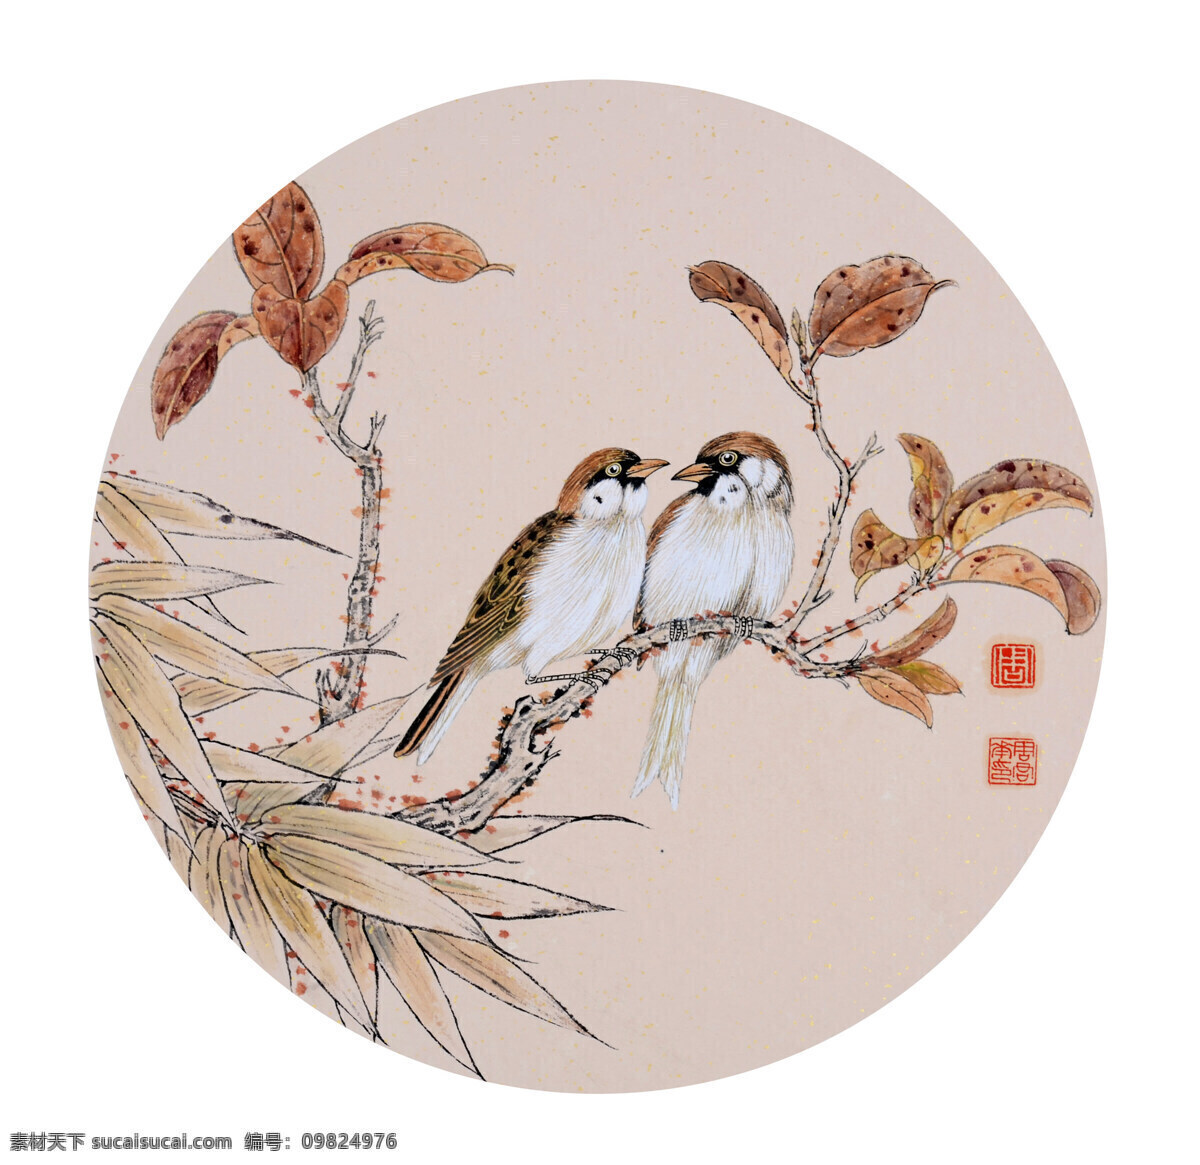 秋趣 周君华作品 两只小鸟 栖息 树枝上 红叶 中国古代画 中国古画 文化艺术 绘画书法